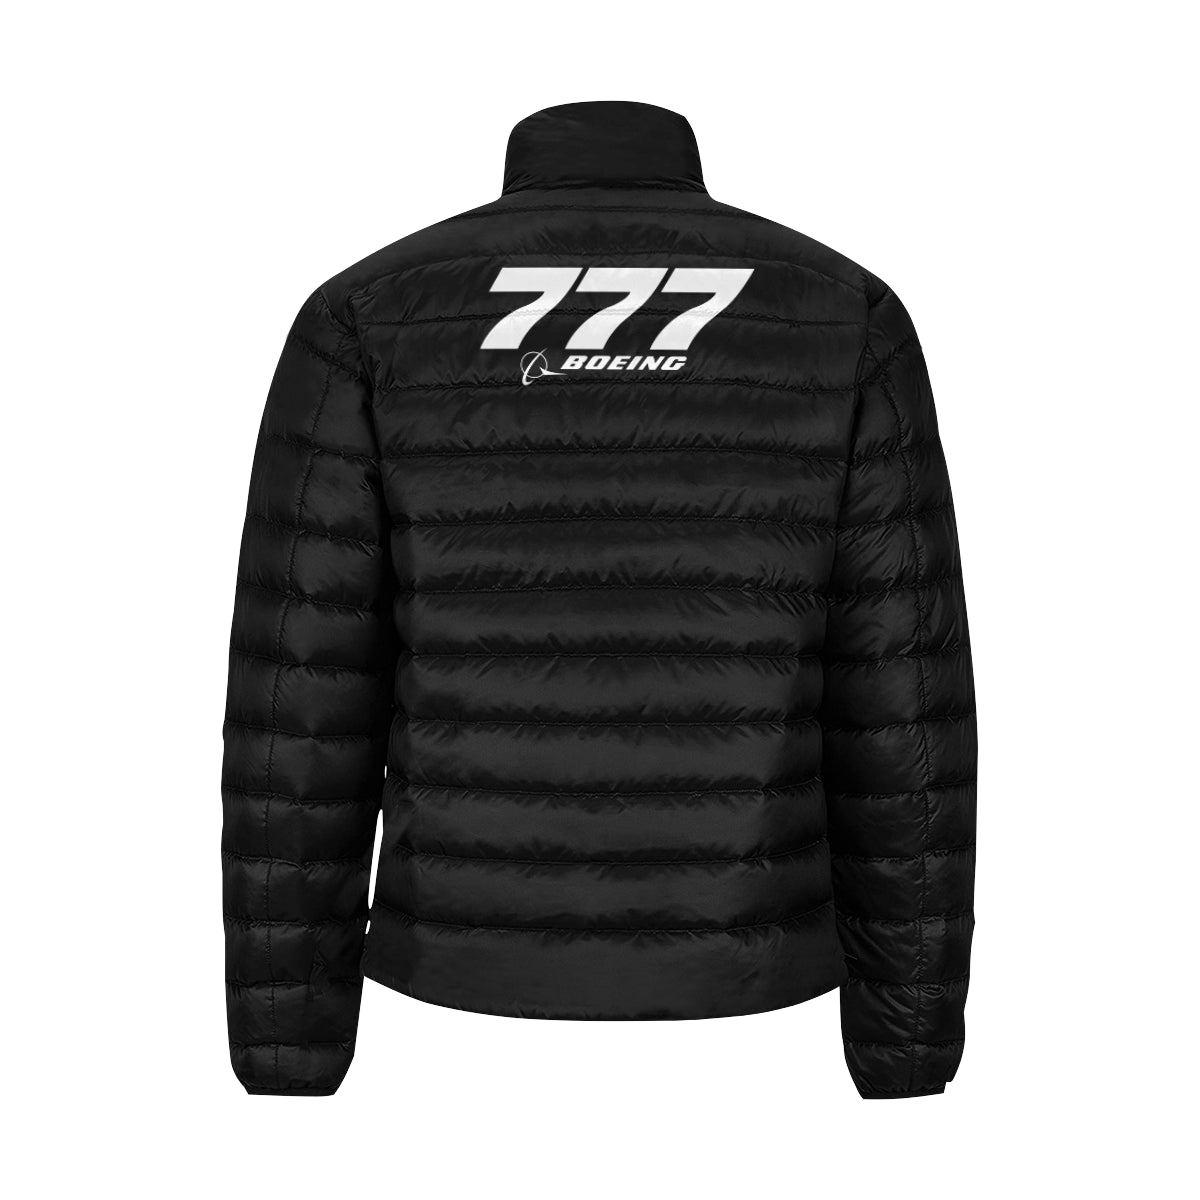 BOEING 777 Men's Stand Collar Padded Jacket e-joyer